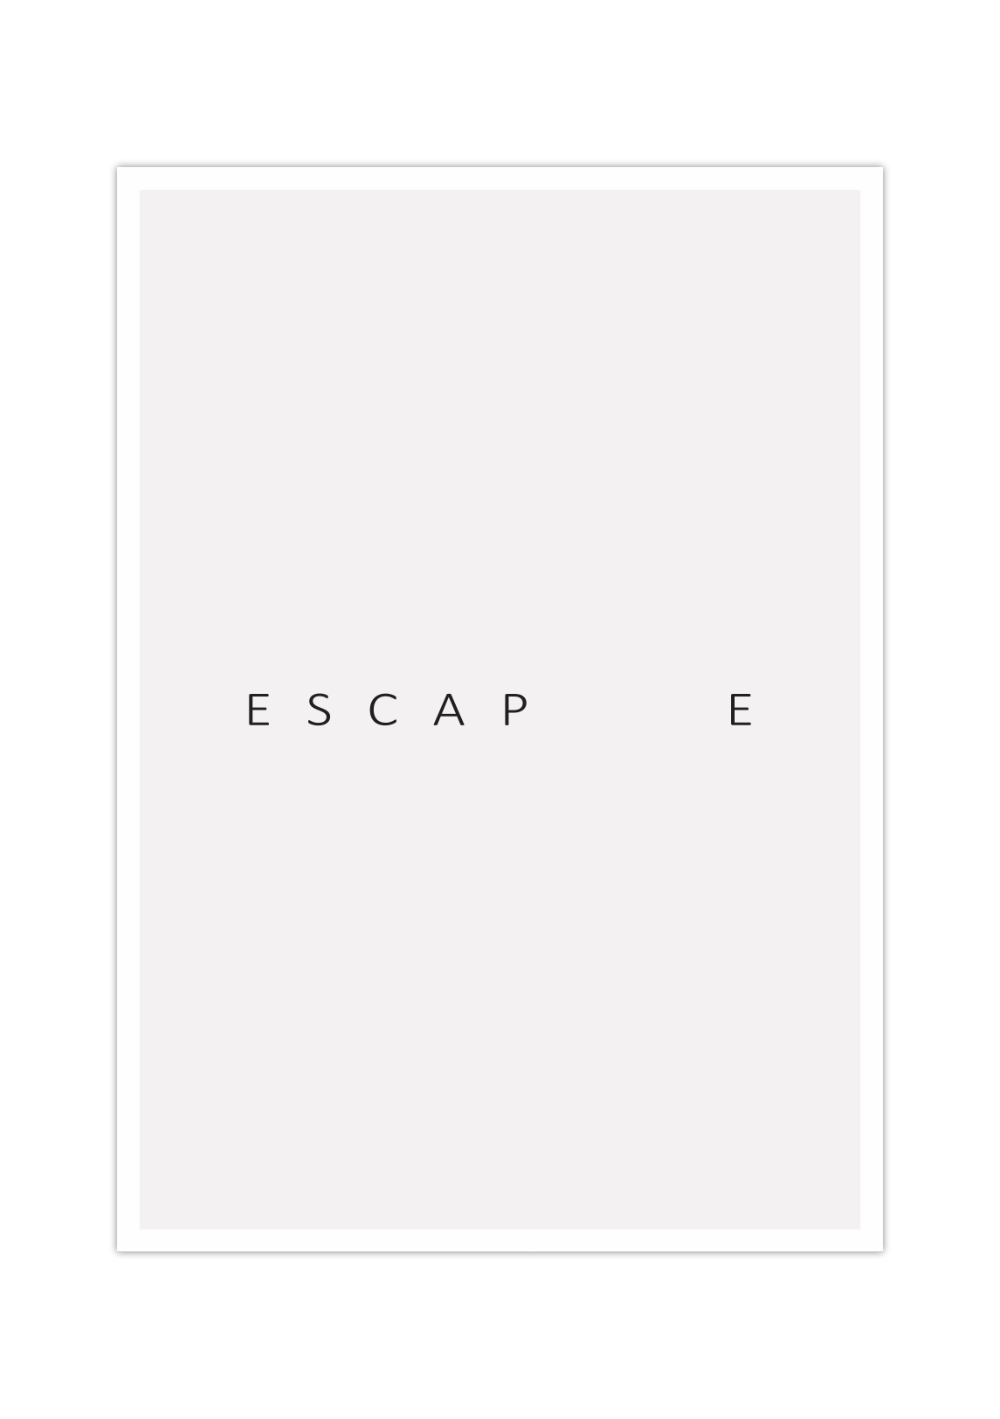 Dieses minimalistische Poster zeigt dir genau ein Wort, Escape (Flucht). 